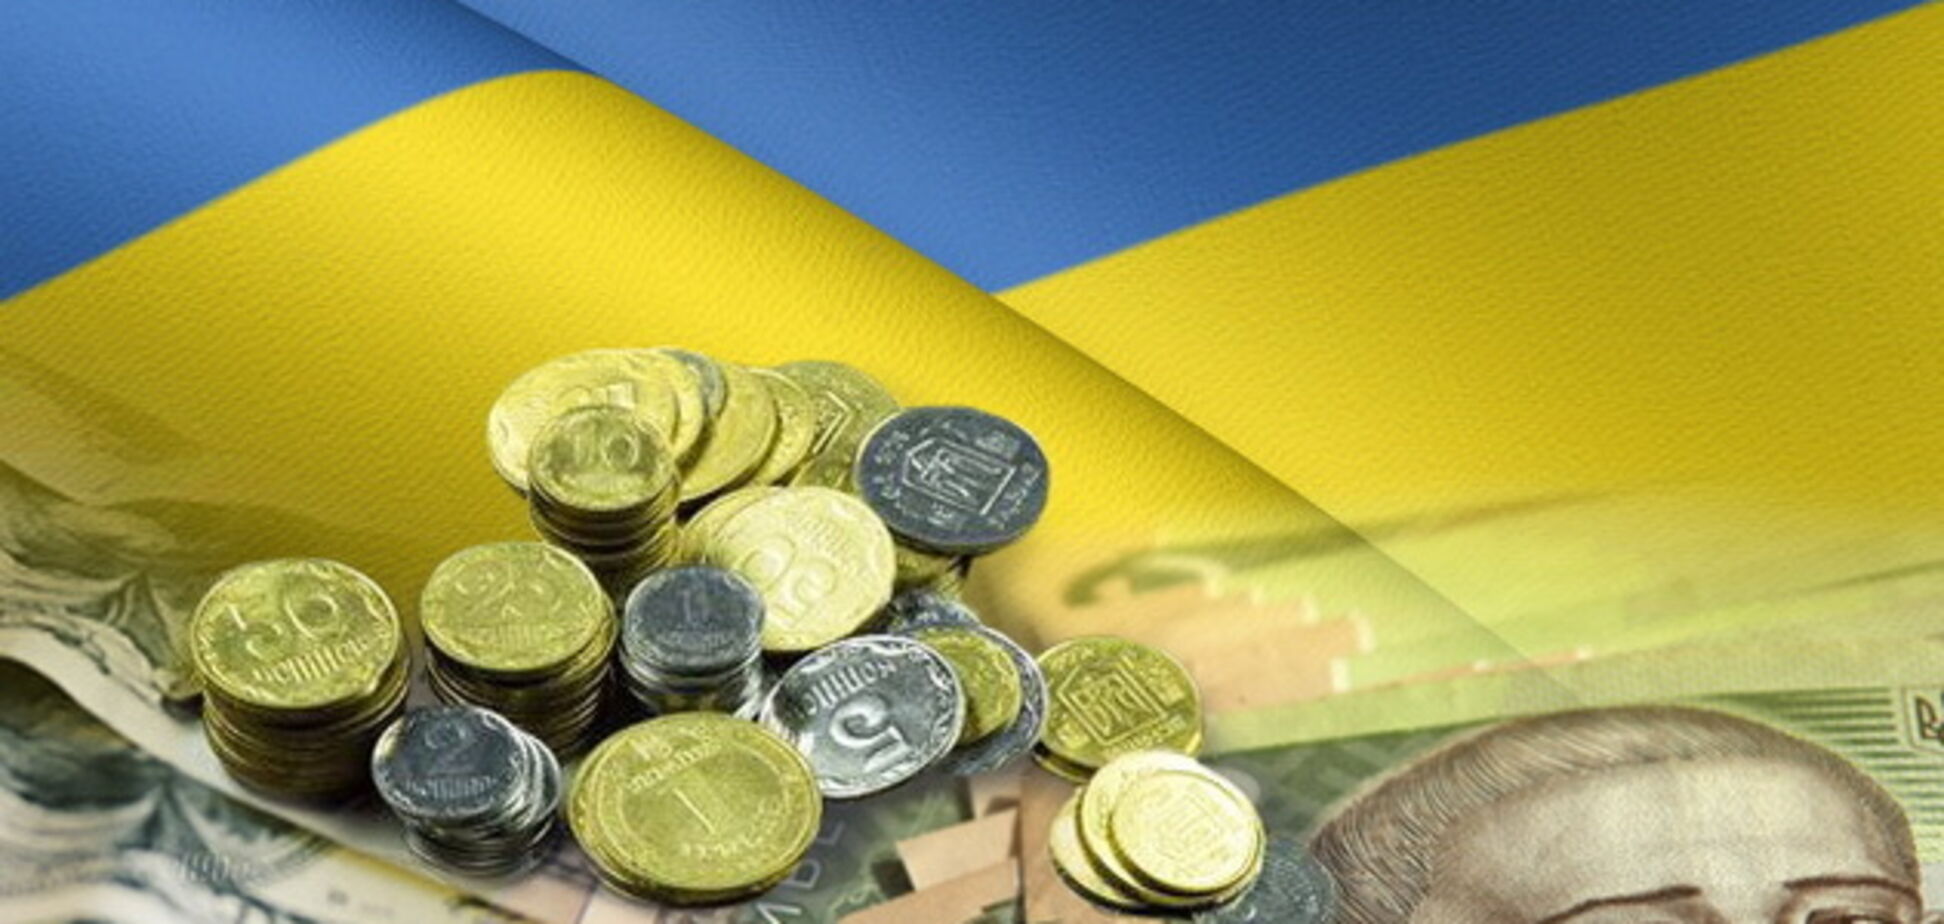 Поступления в Государственный бюджет Украины побили рекорд: итоги за декабрь и 2018 год